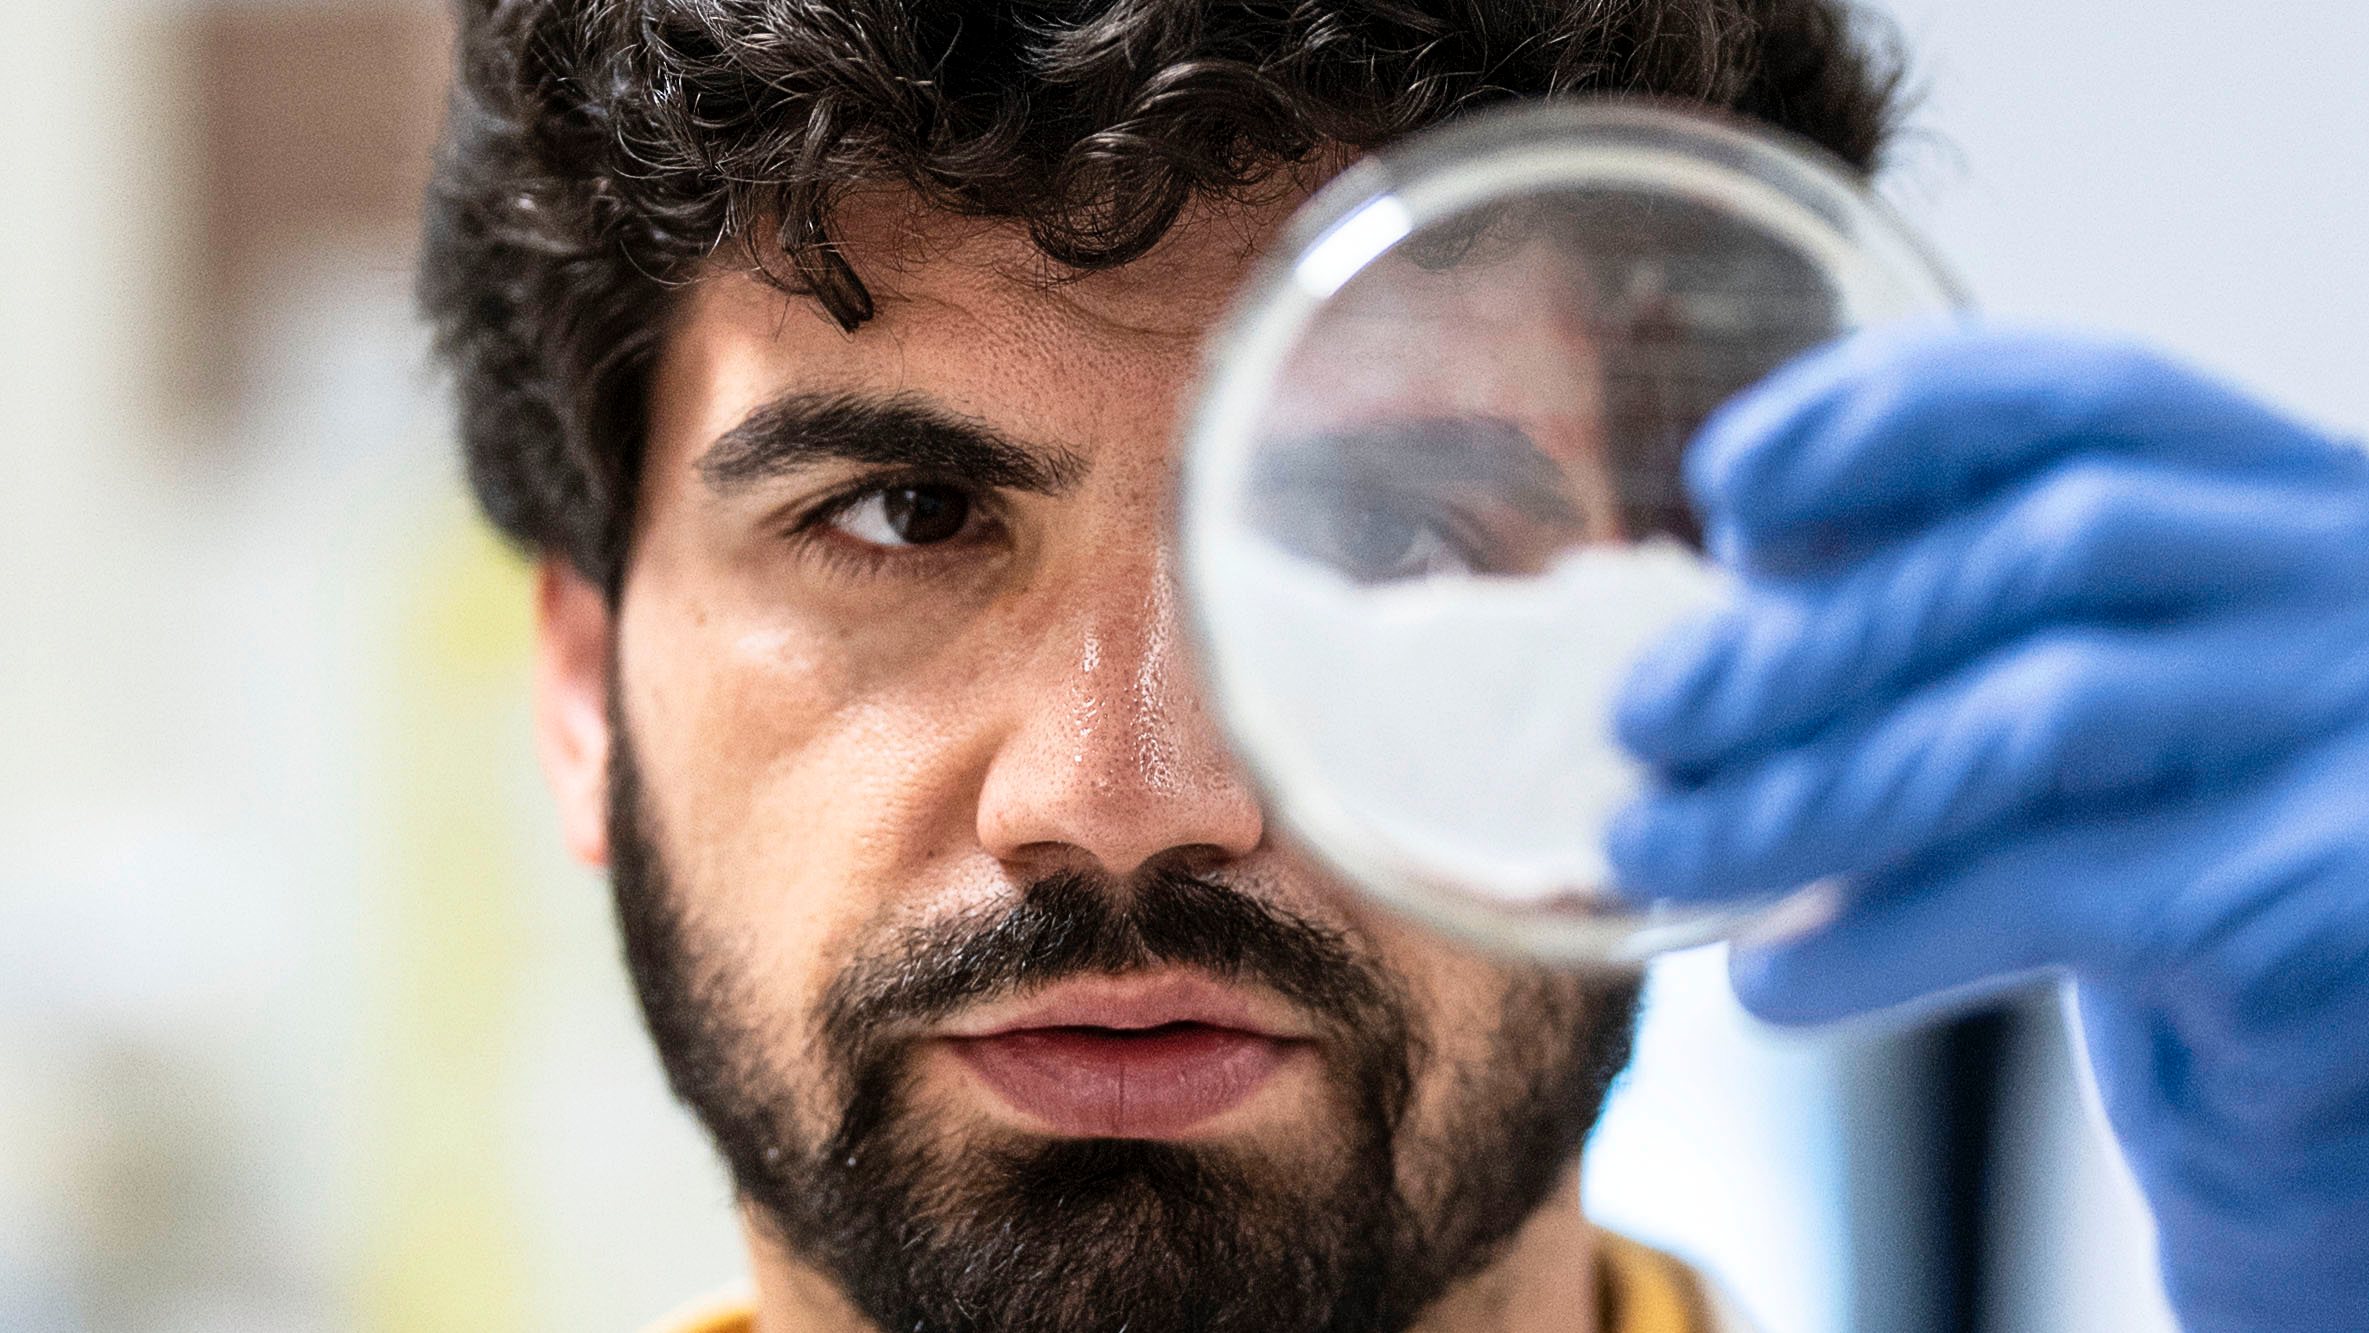 Investigador da Universidade de Aveiro desde 2017, Diogo Trigo doutorou-se em neurofisiologia na University College London e fez o pós-doutoramento no King’s College, na mesma cidade. Trabalha em nanopartículas para reparar neurónios